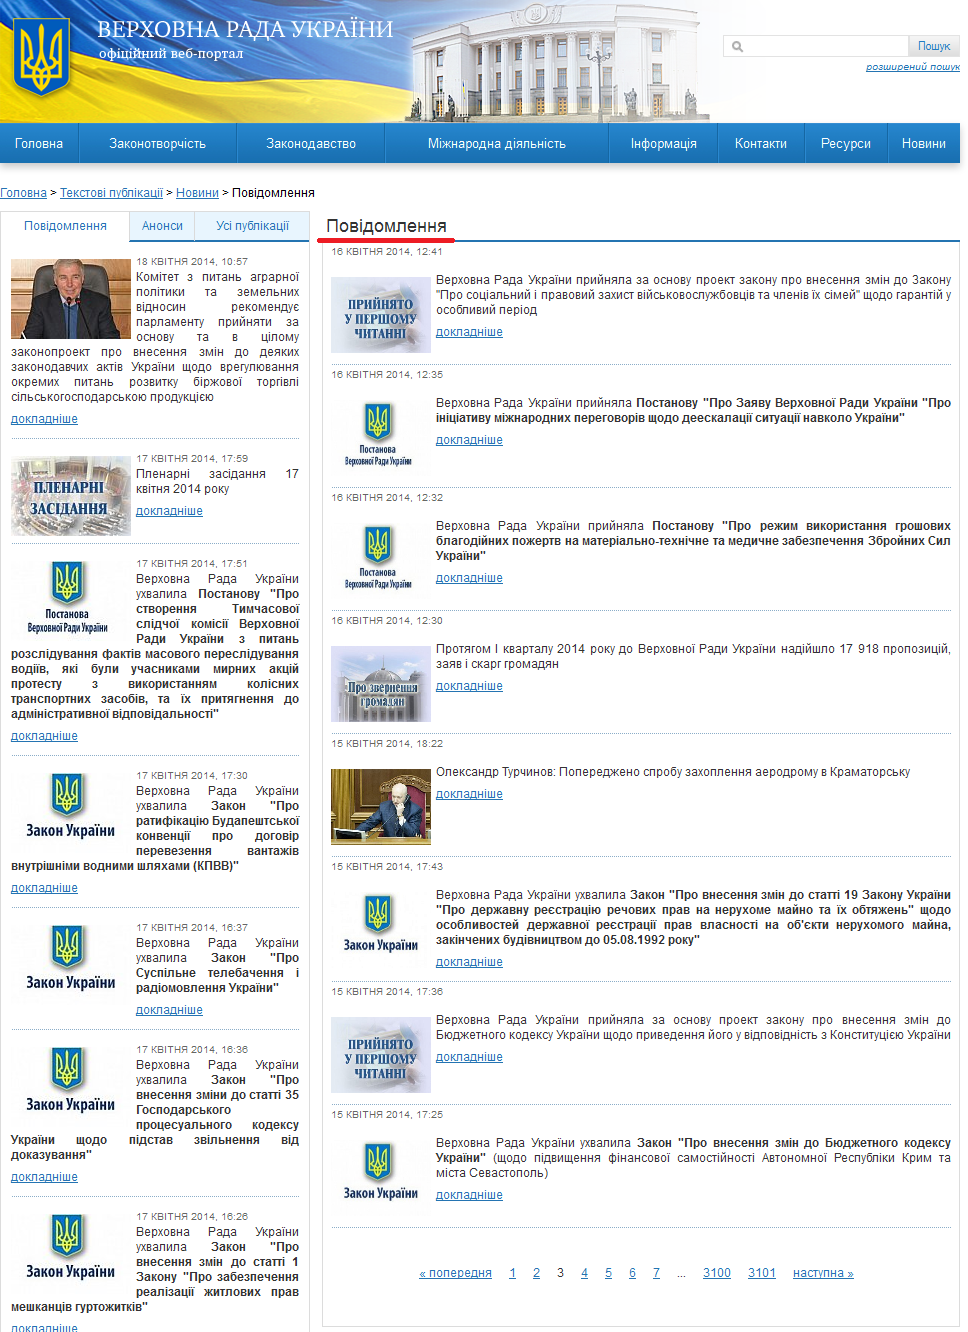 http://iportal.rada.gov.ua/news/Novyny/Povidomlennya/page/3